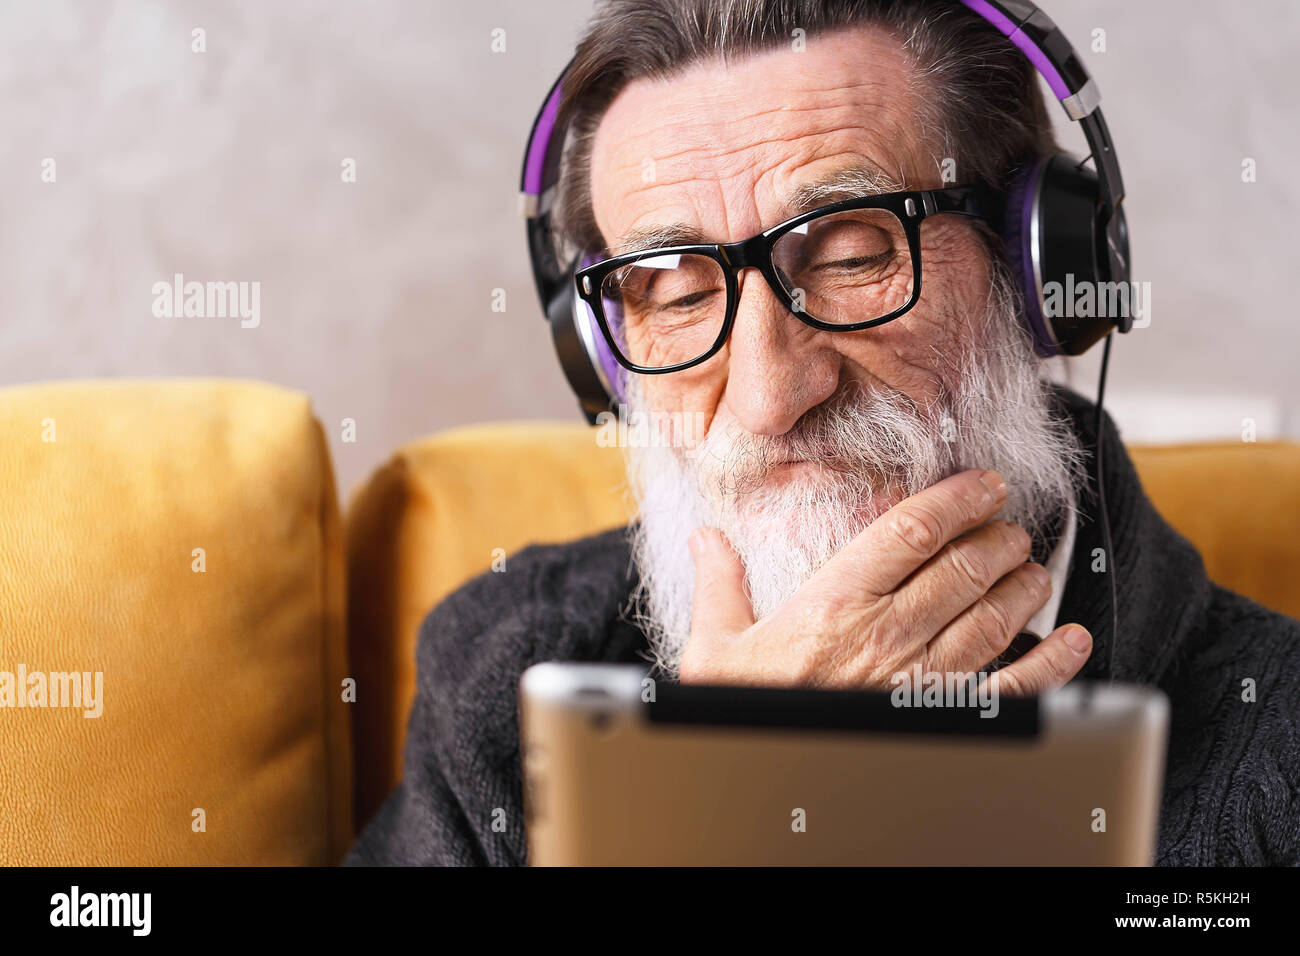 Senior nachdenklich bärtigen Mann mit Brille grau pullover Lernen der digitalen Tablet während der Sitzung in der Kopfhörer auf ein gelbes Sofa in seinem Lichte Wohnzimmer setzen, er richtet seinen Bart Stockfoto